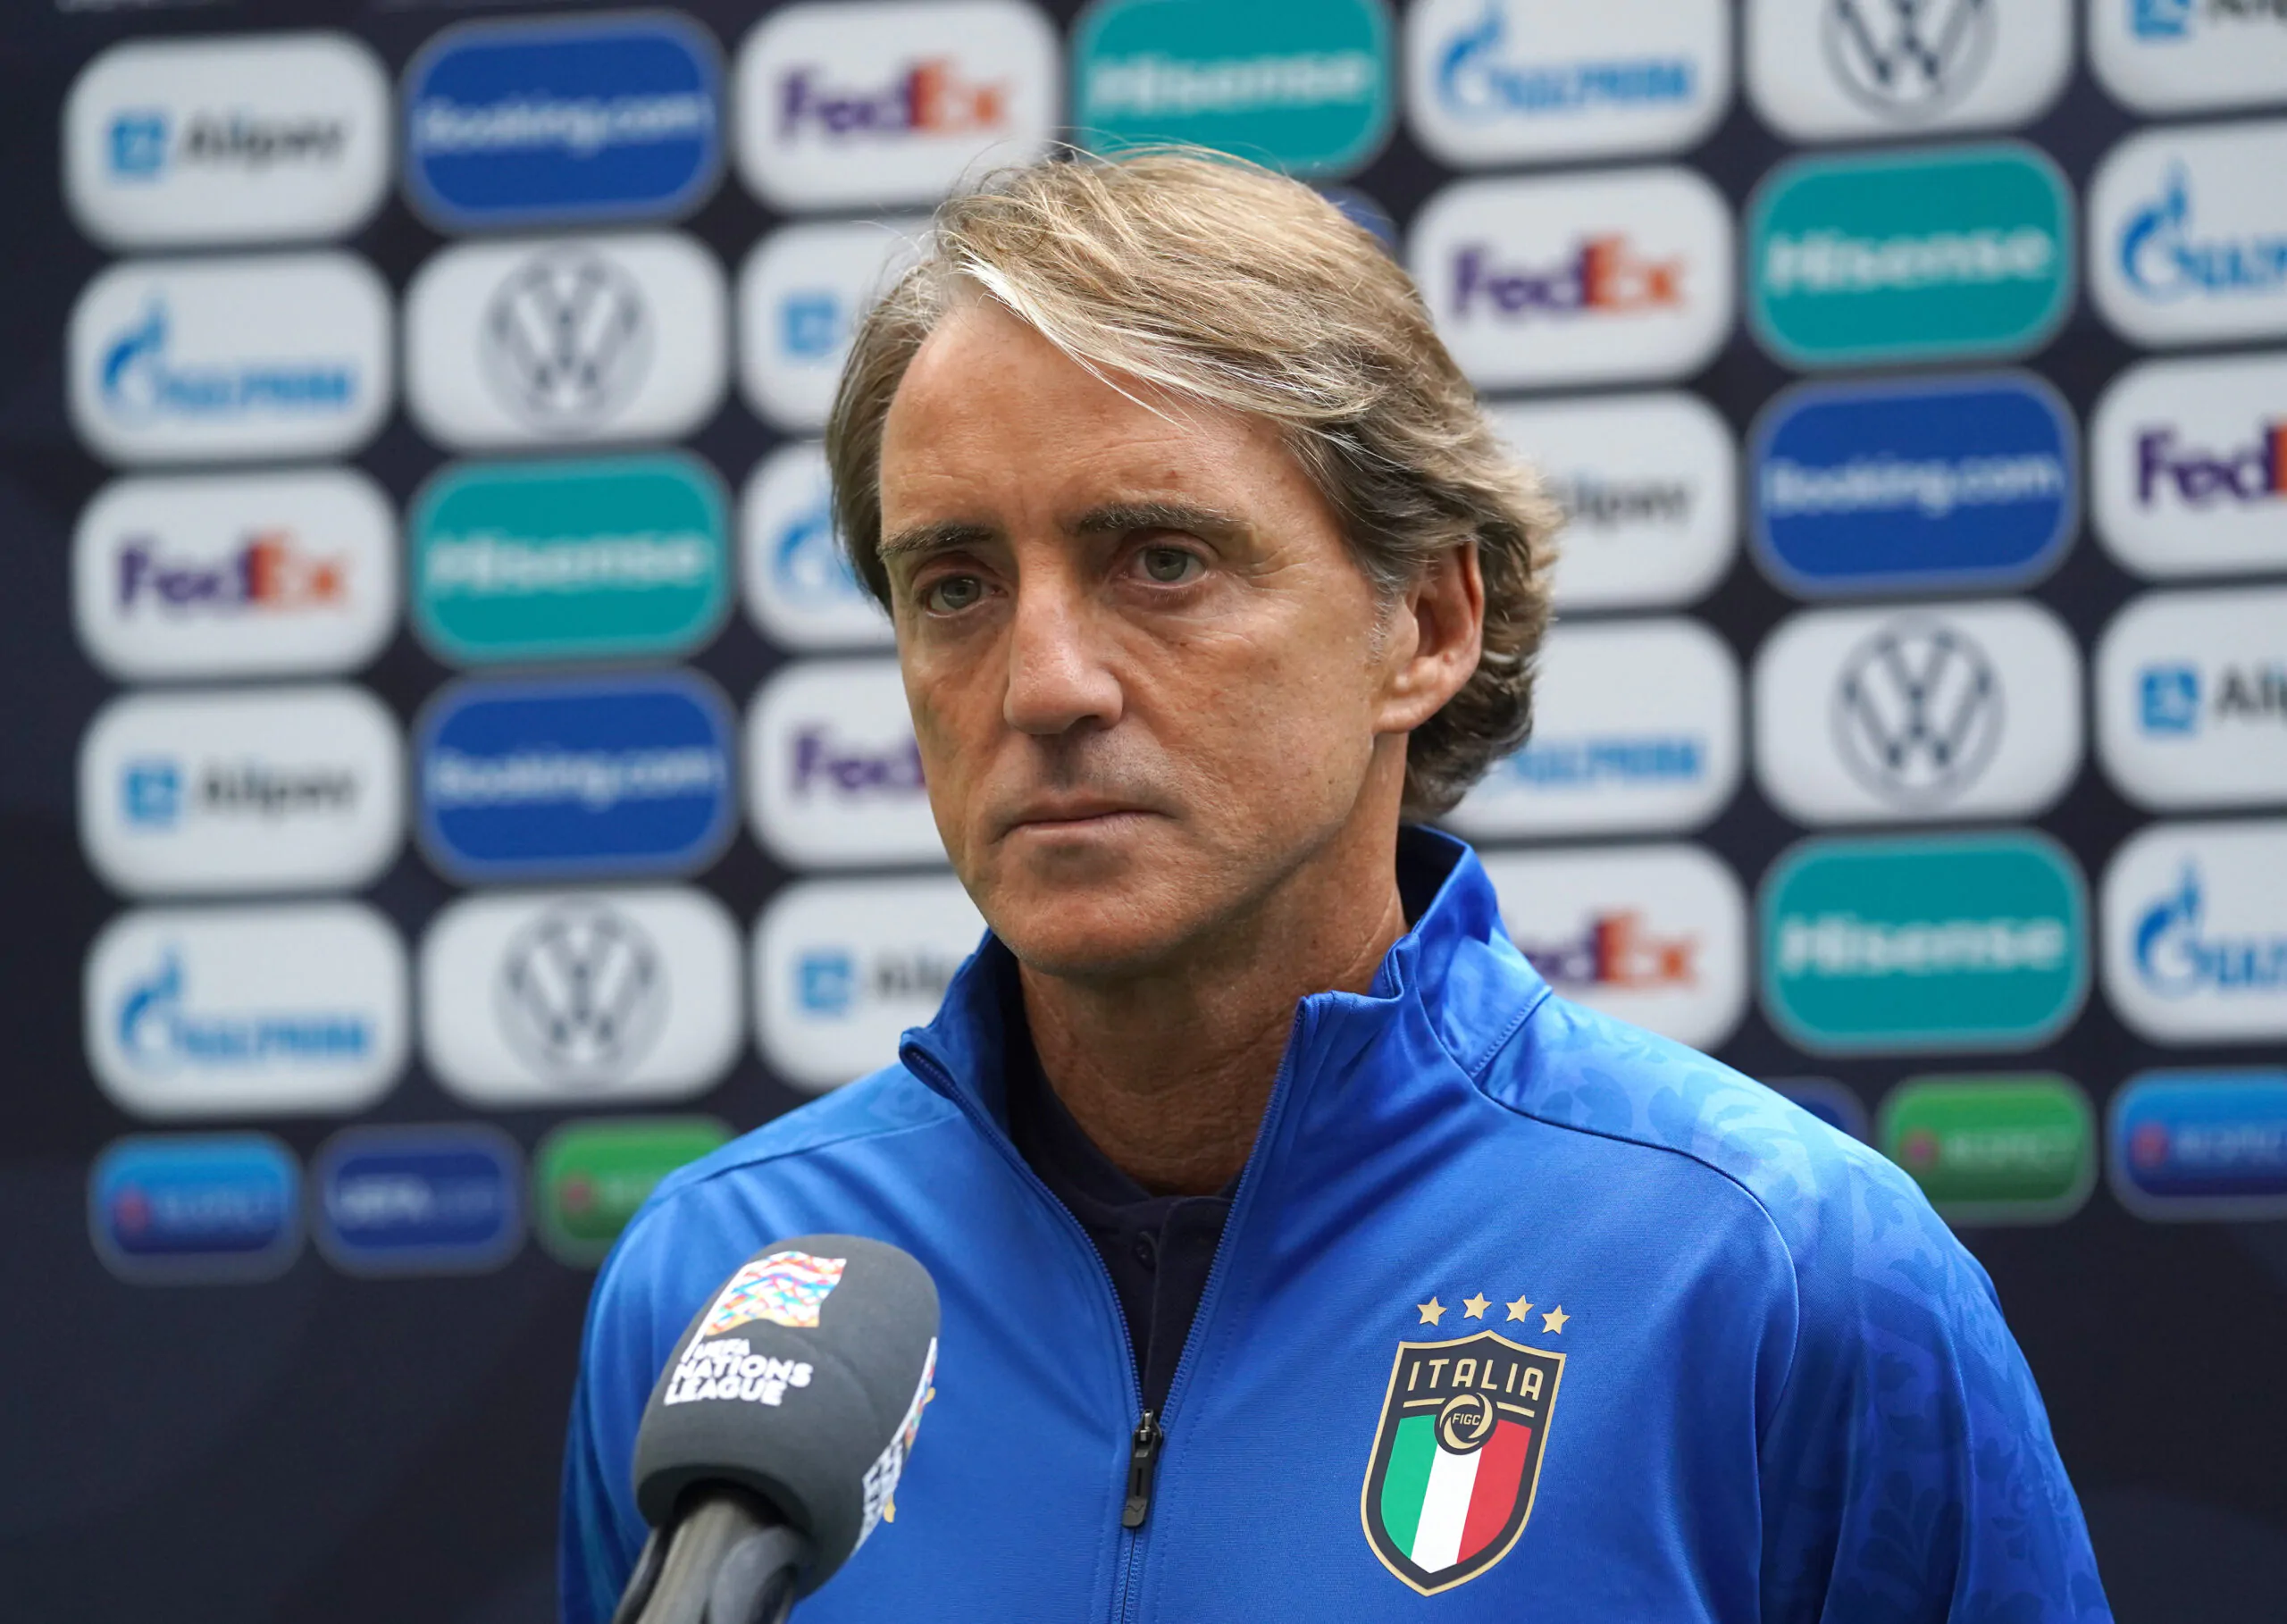 Mancini preoccupato dopo il sorteggio: “Vi dico la mia”